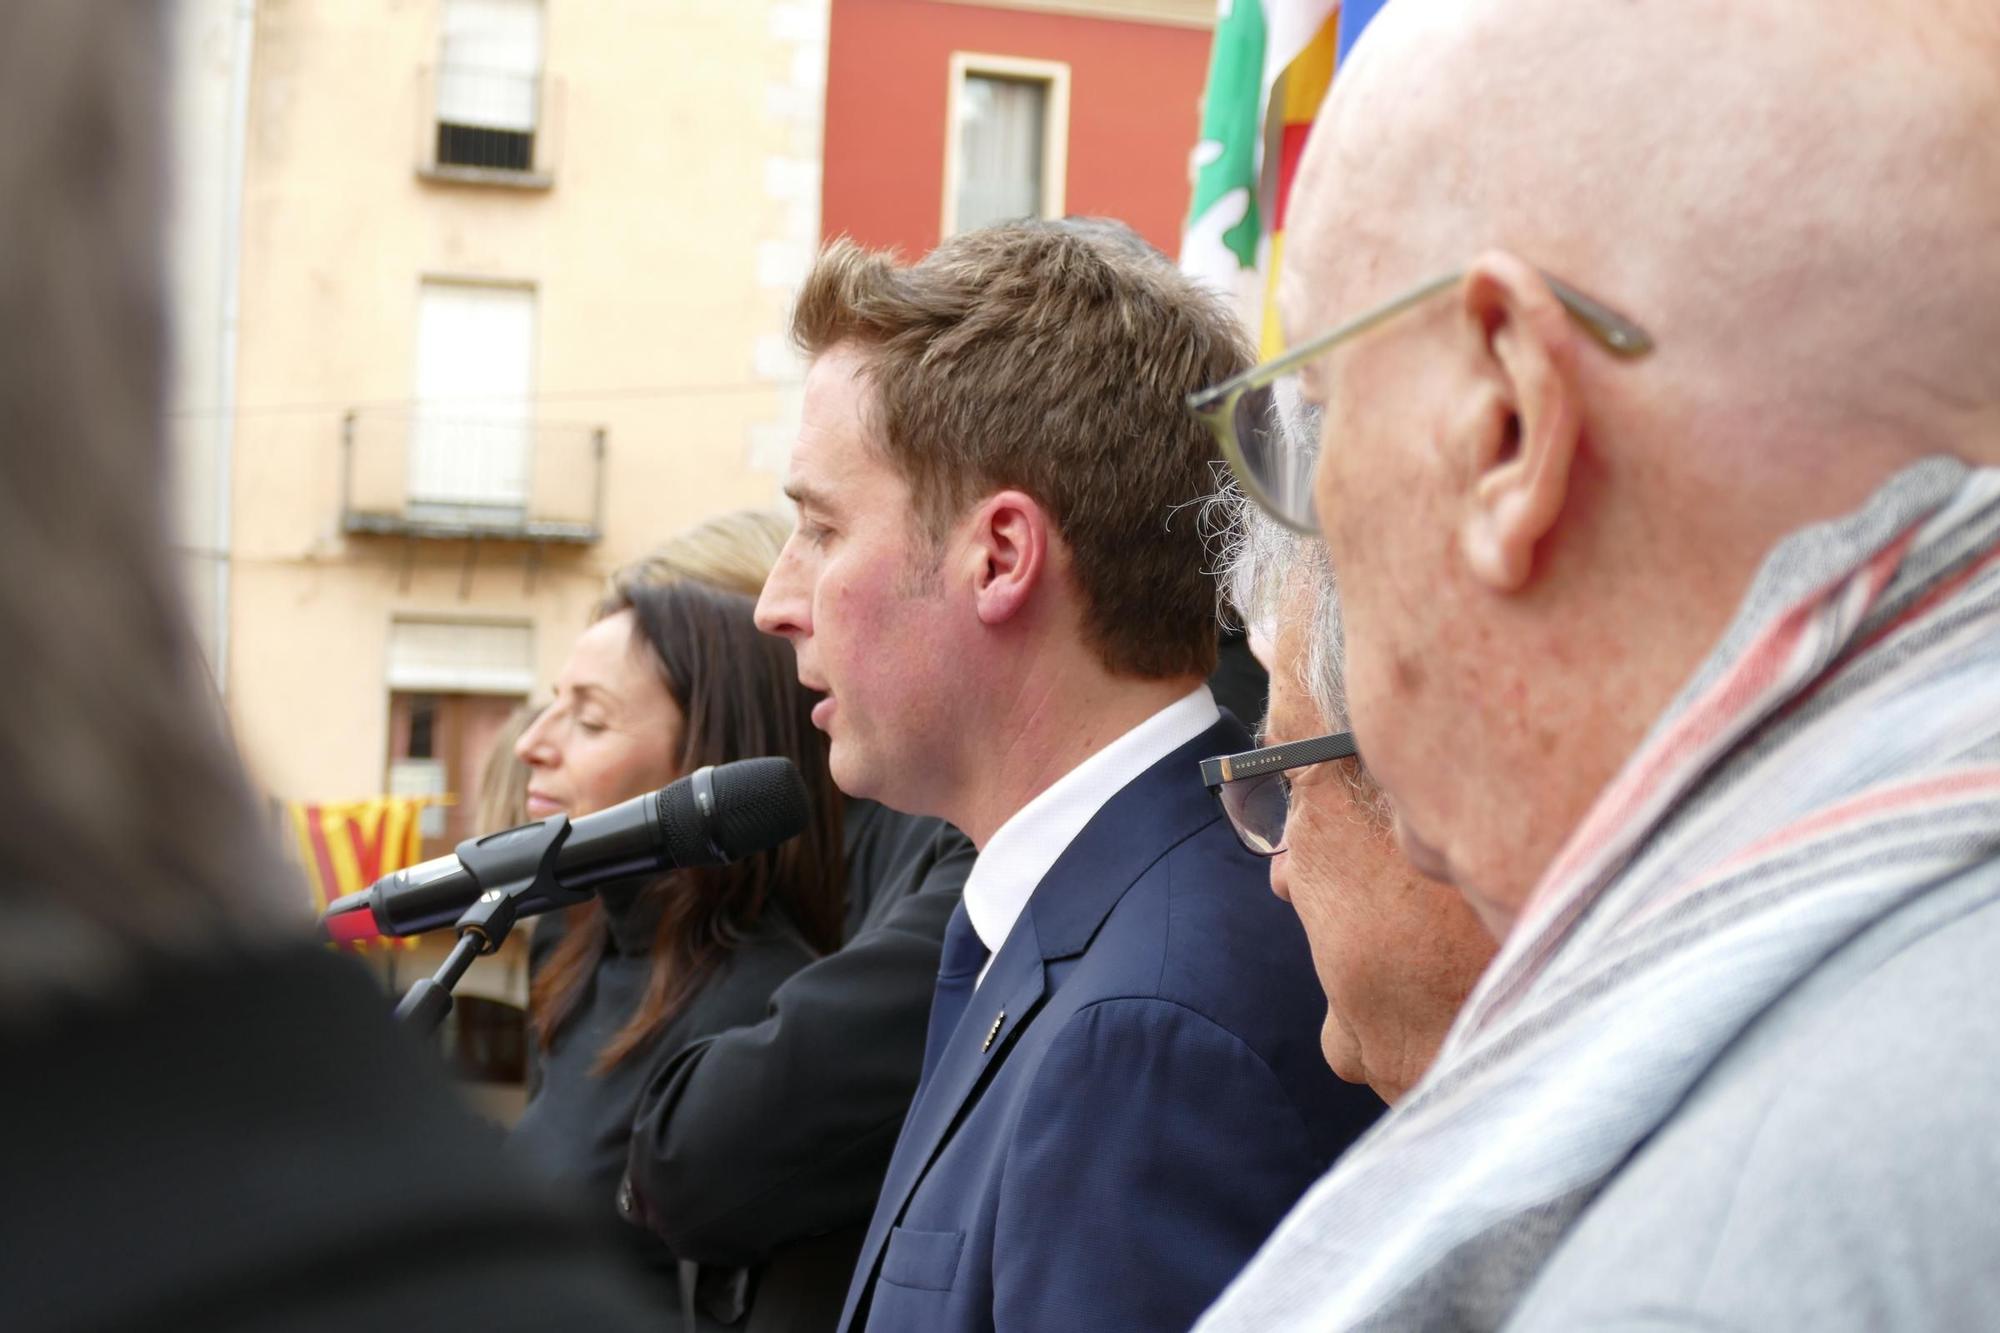 El seguici popular i el pregó del periodista Carles Pujol donen el tret de sortida a les Fires i Festes de la Santa Creu